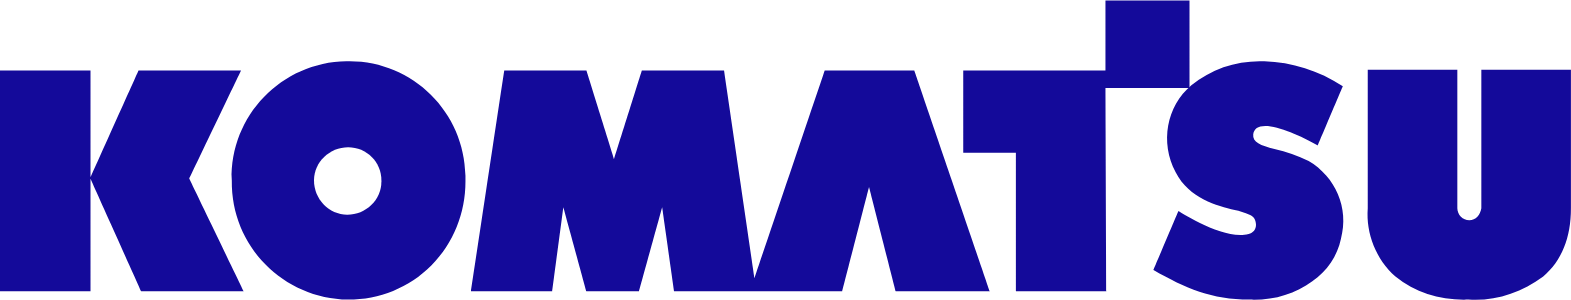 Komatsu logo large (transparent PNG)